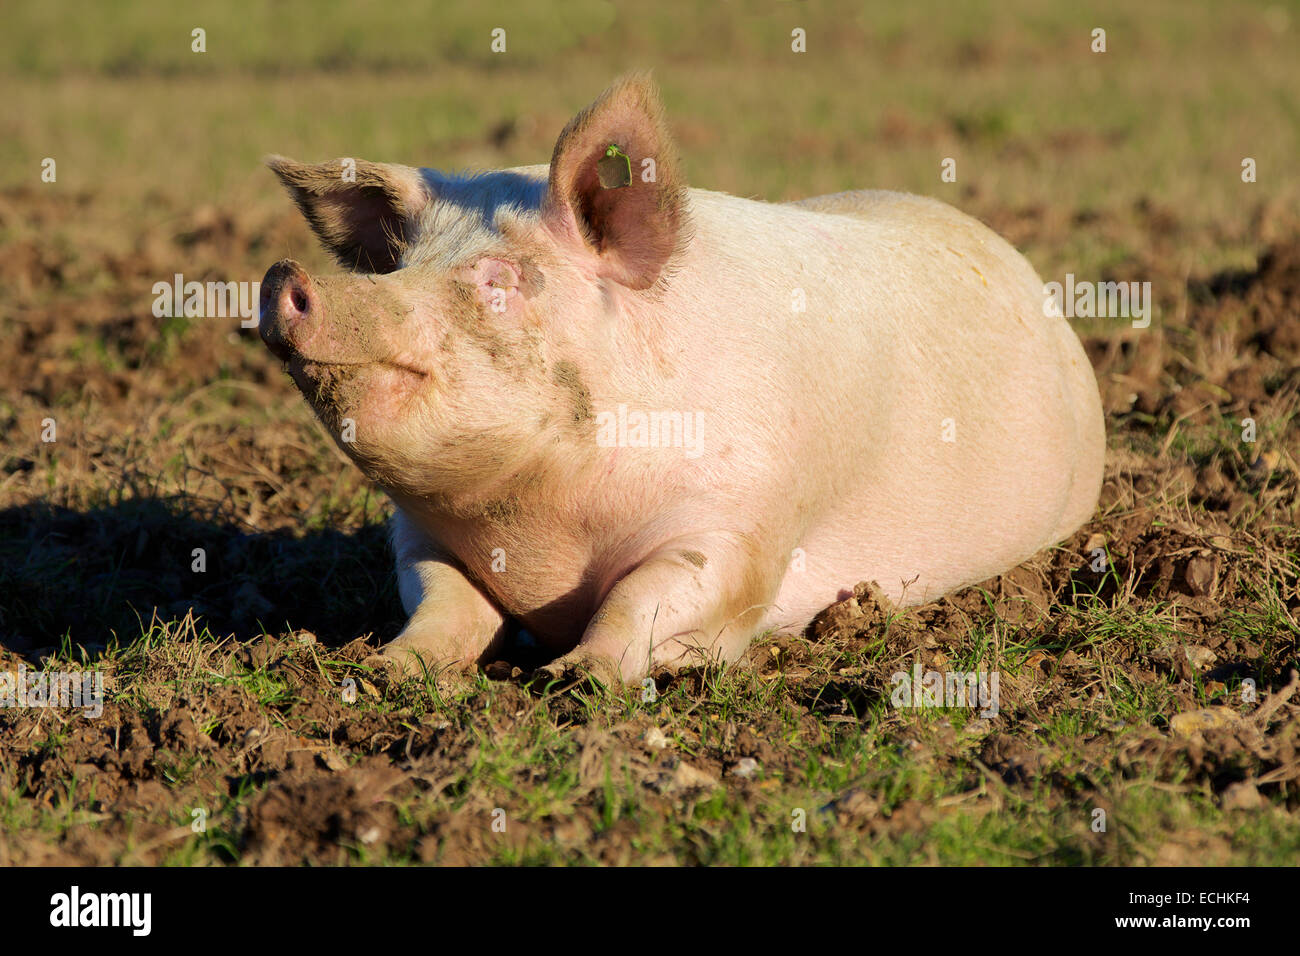 Zufriedenes Schwein. Einsamer rosa Schwein schwelgen in einem schlammigen Feld. Stockfoto